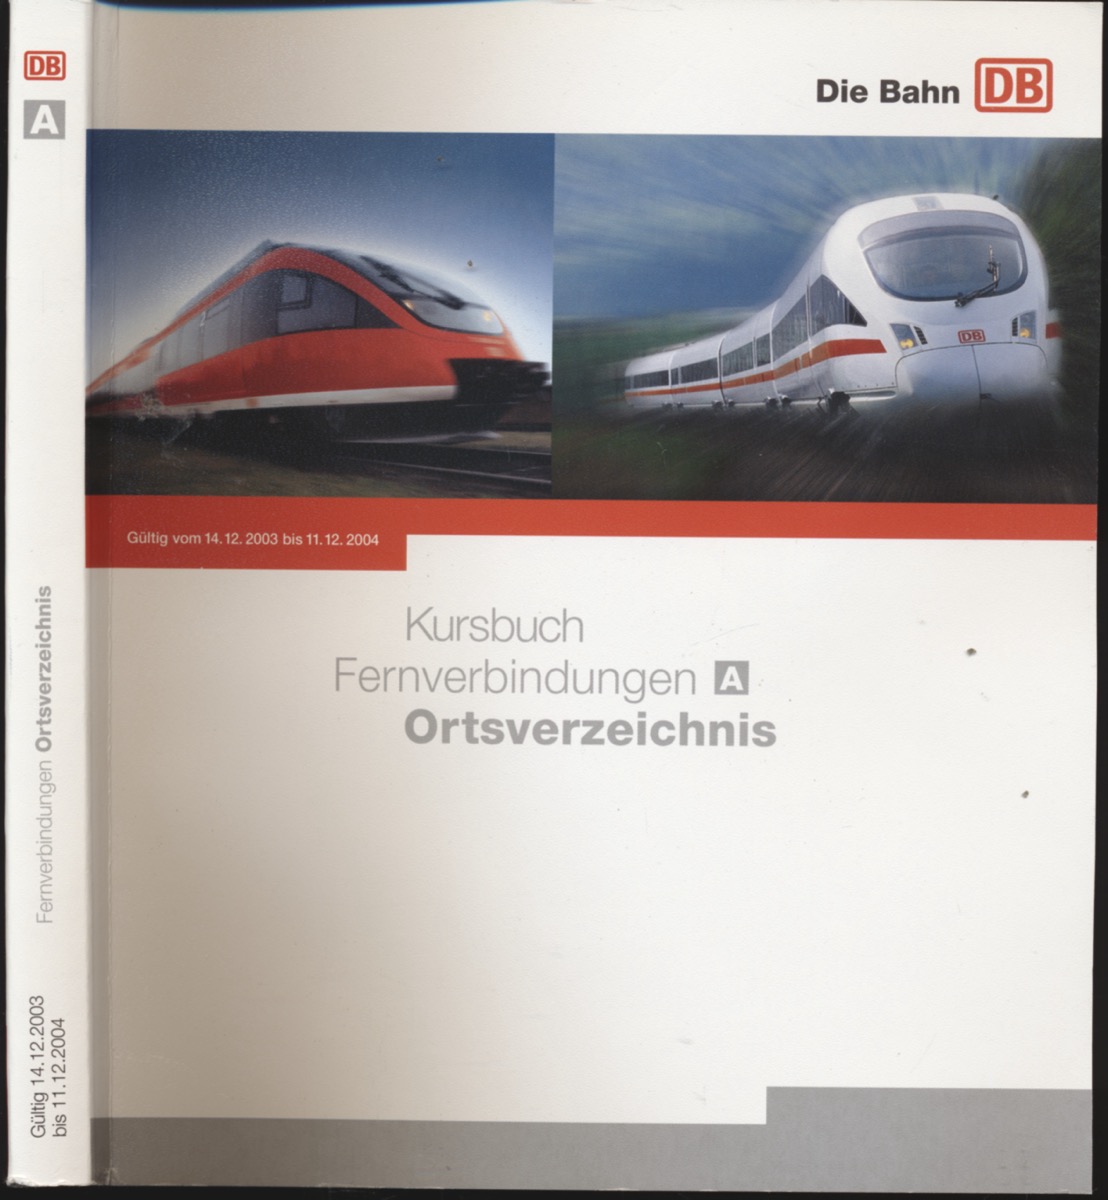 DEUTSCHE BAHN (Hrg.)  Kursbuch Fernverbindungen A. Ortsverzeichnis, gültig vom 14.12.2003 bis 11.12.2004. 